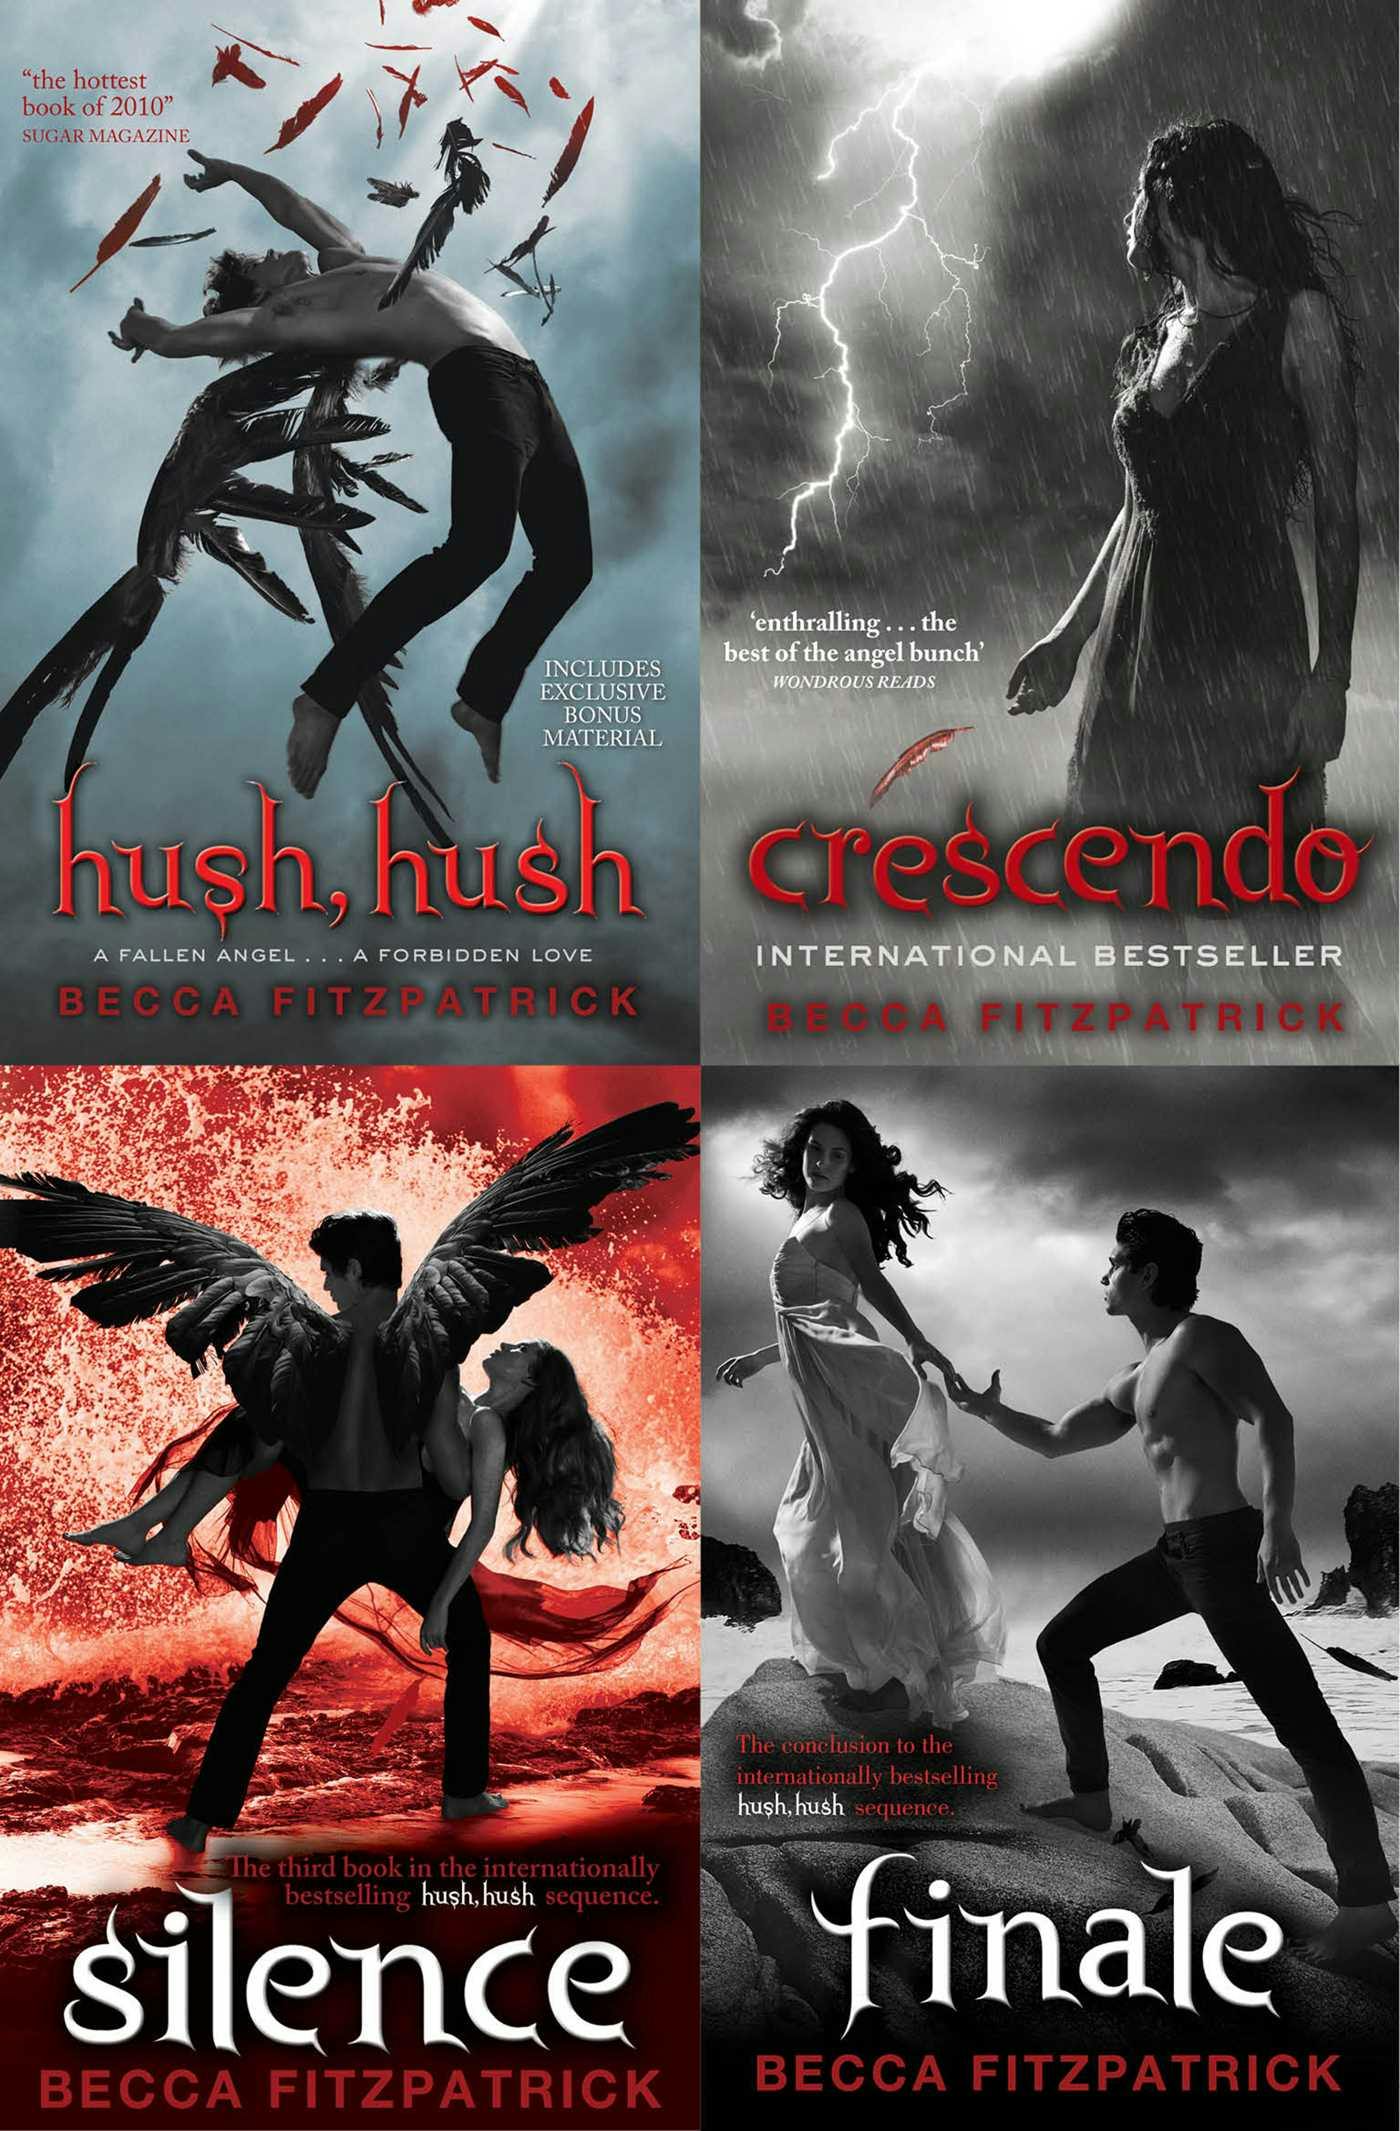 The Complete Hush, Hush Saga: includes Hush, Hush; Crescendo; Silence and Finale - Becca Fitzpatrick